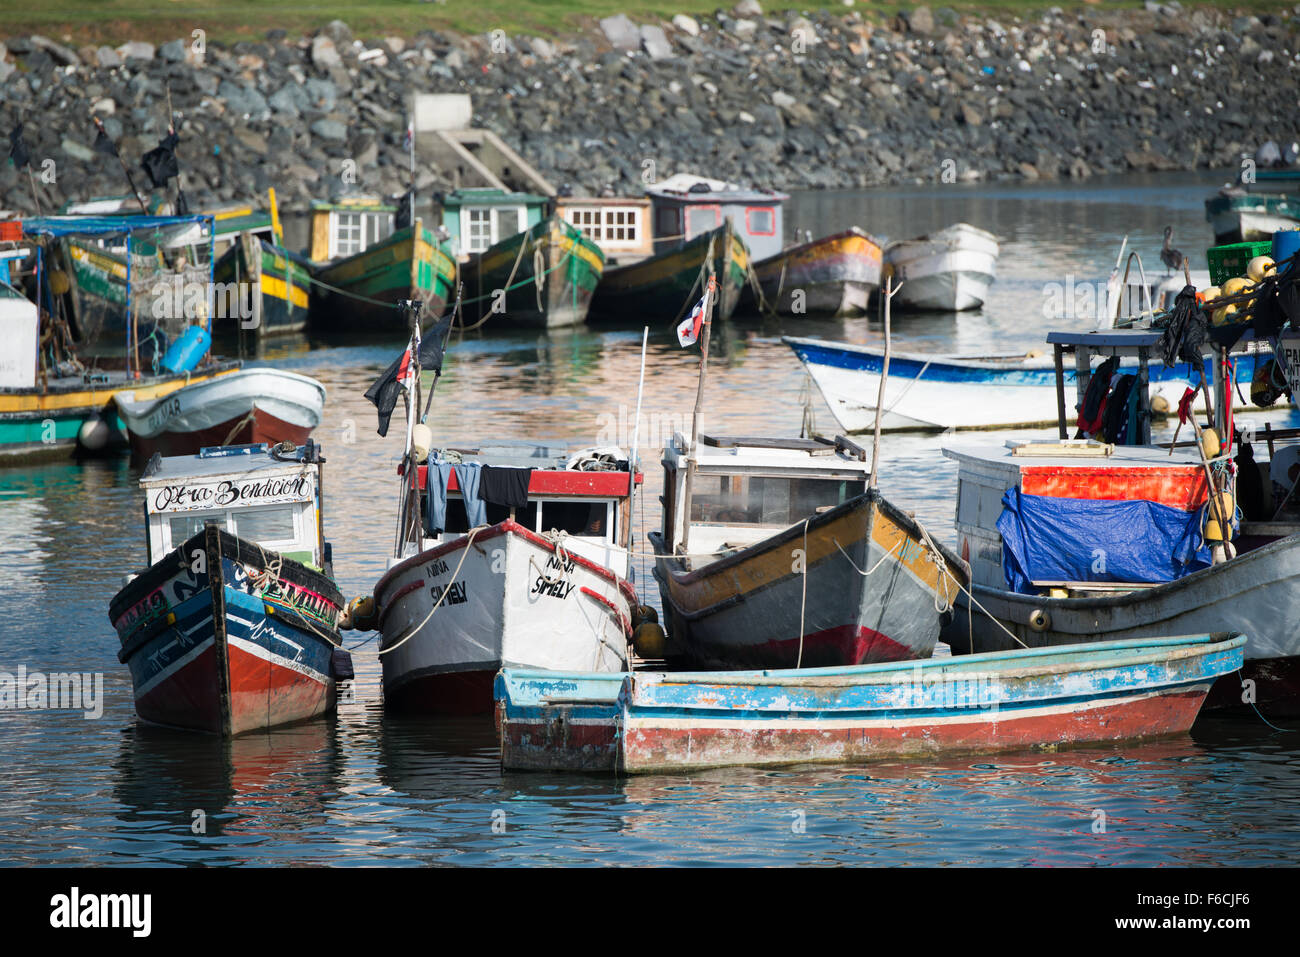 La ville de Panama, Panama--Petits bateaux de pêche en bois au bord de l'eau de la ville de Panama, Panama, sur la baie de Panama. Banque D'Images